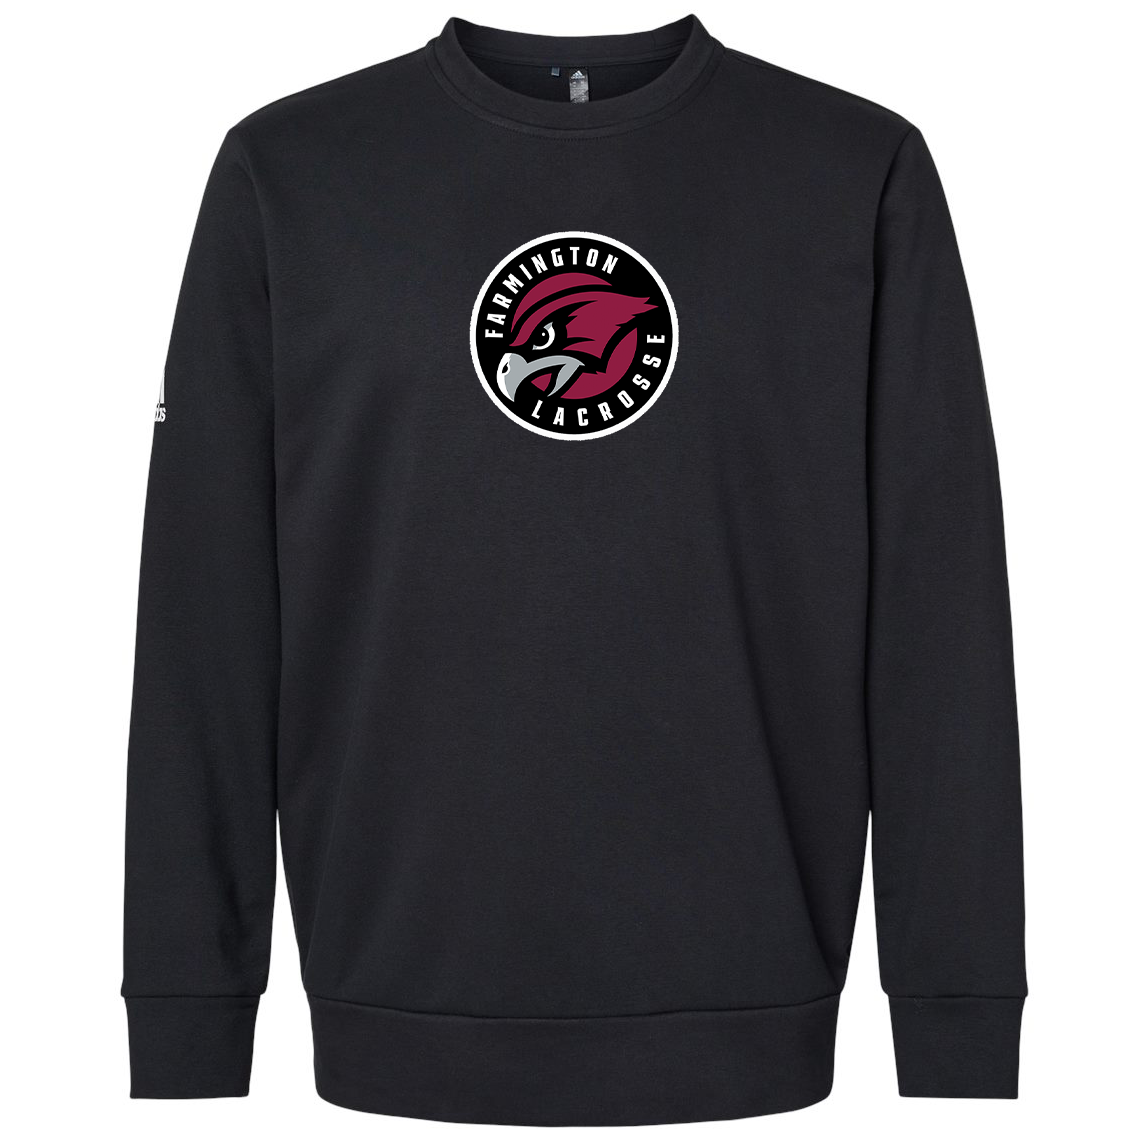 Farmington Lacrosse Adidas Fleece Crewneck Sweatshirt